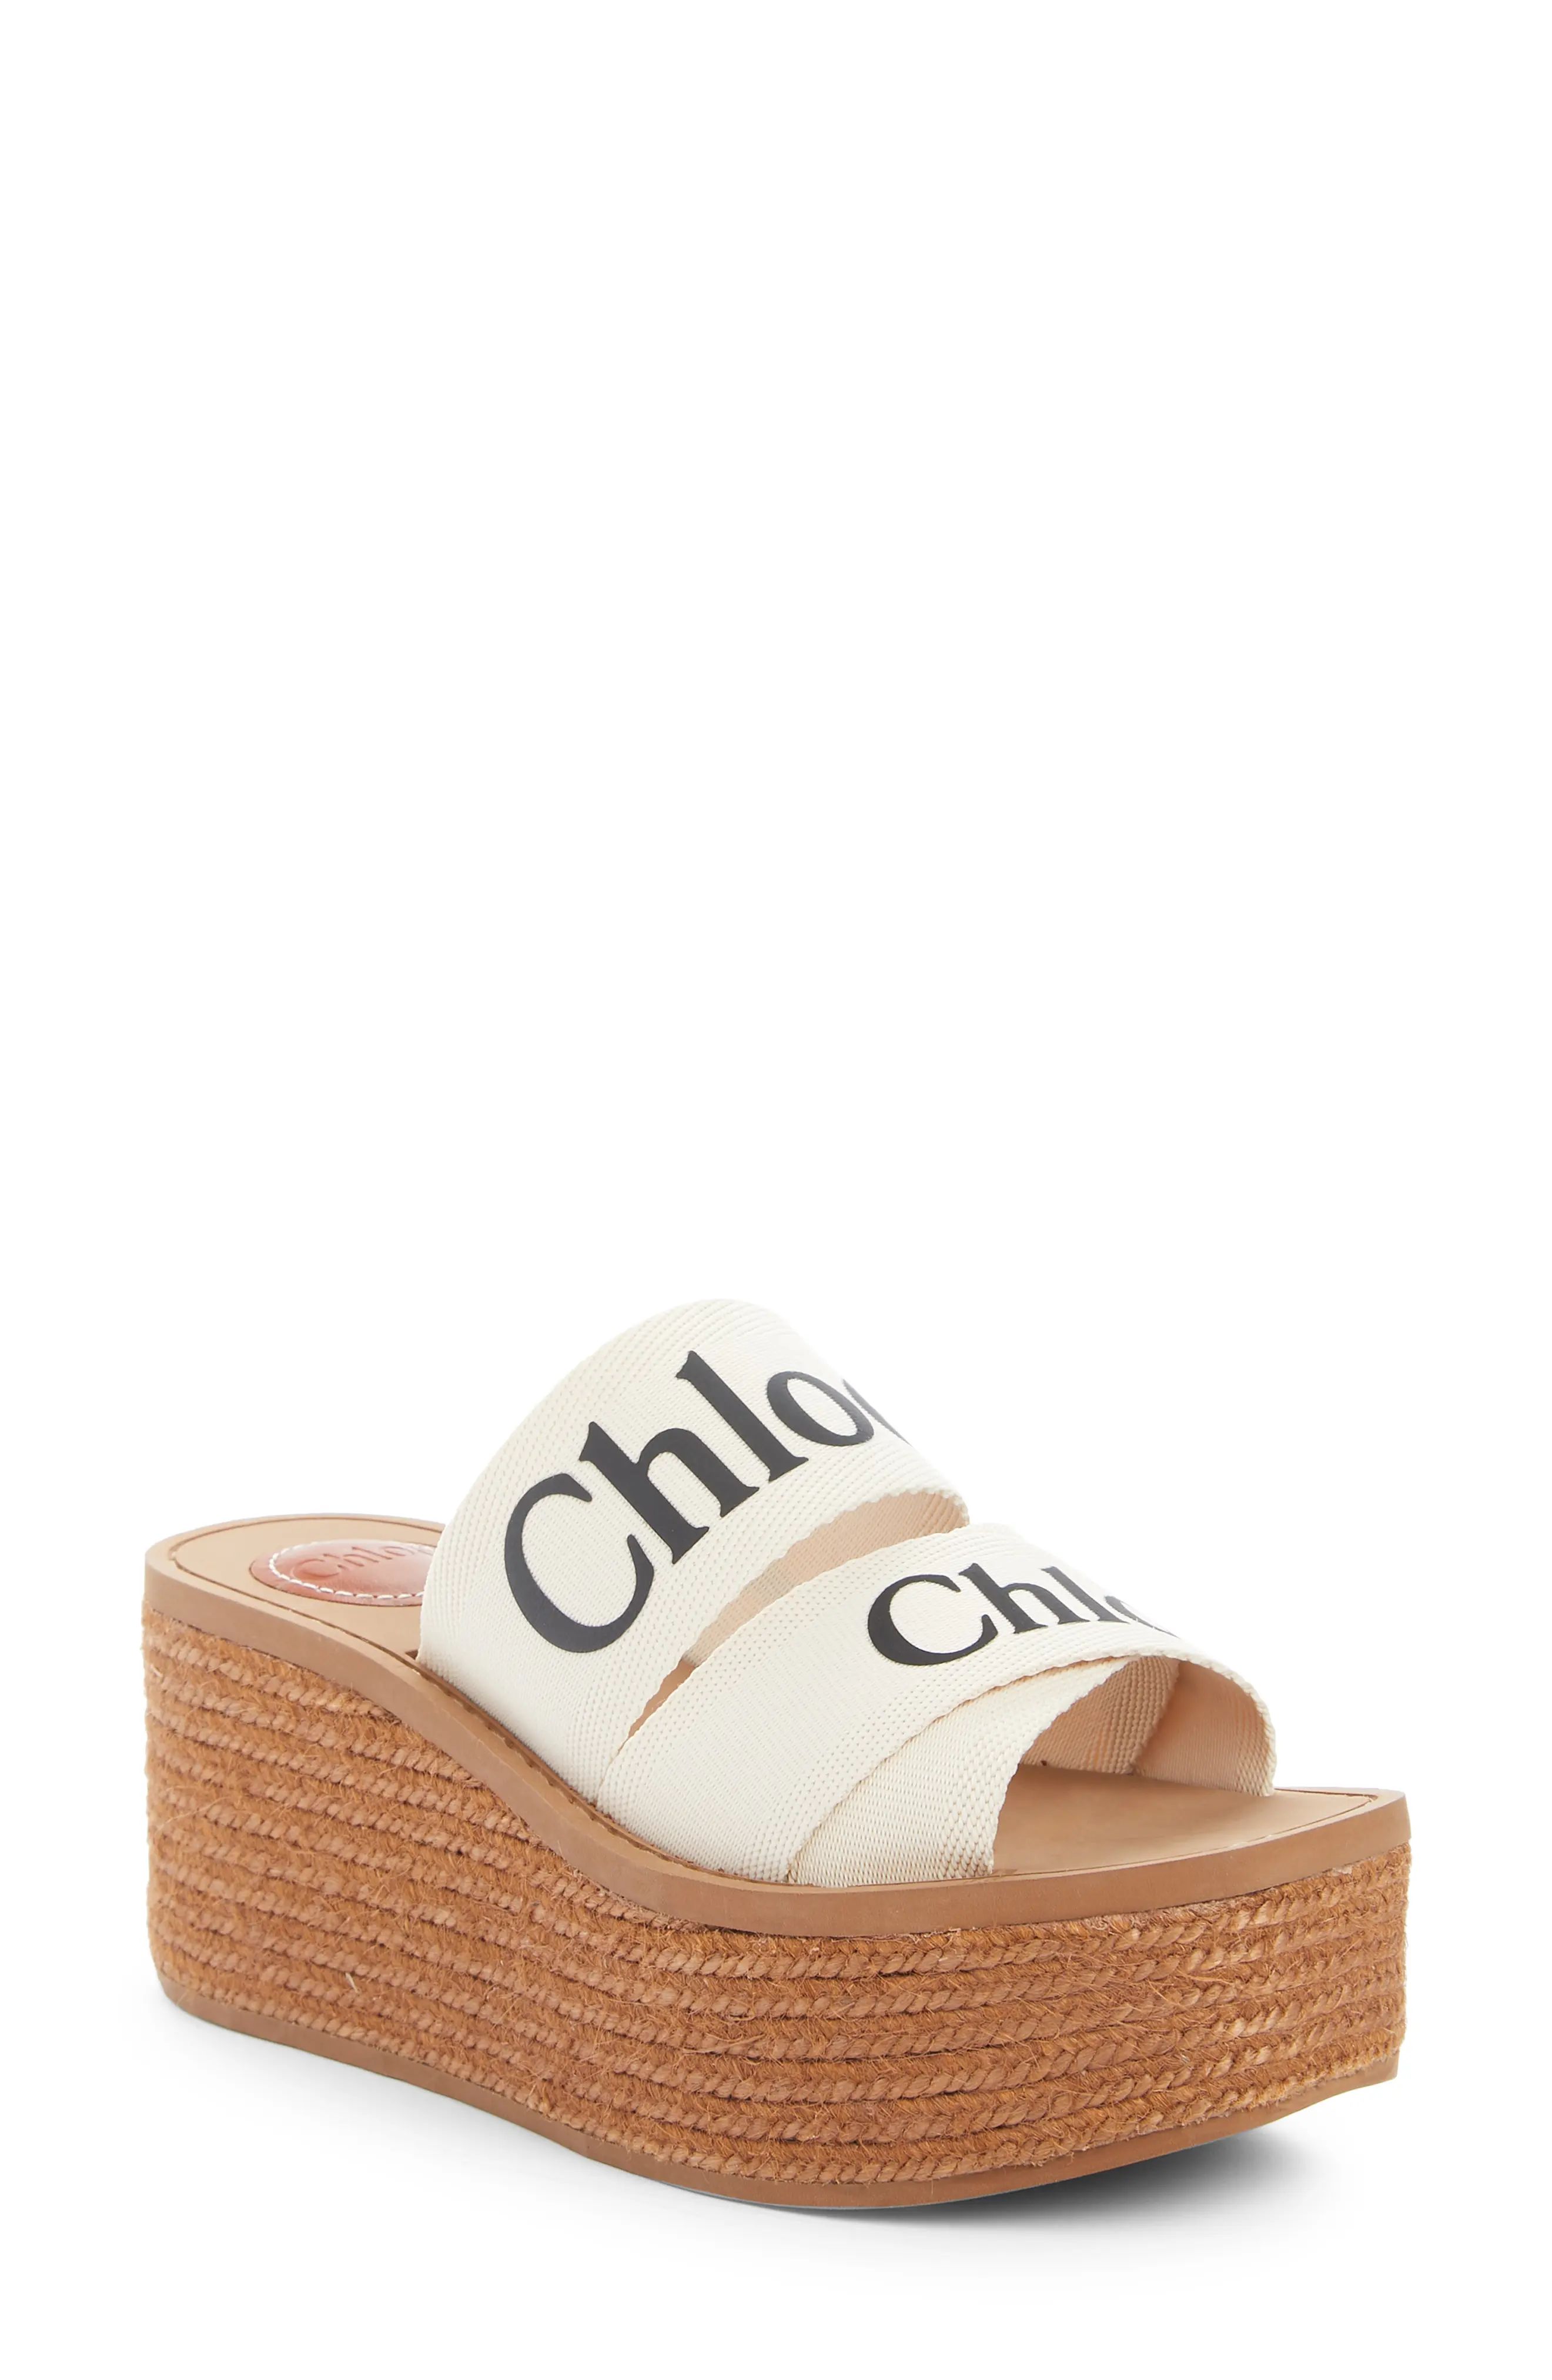 Women's Chloe Woody Logo Espadrille Platform Slide Sandal, Size 5US - White | Nordstrom